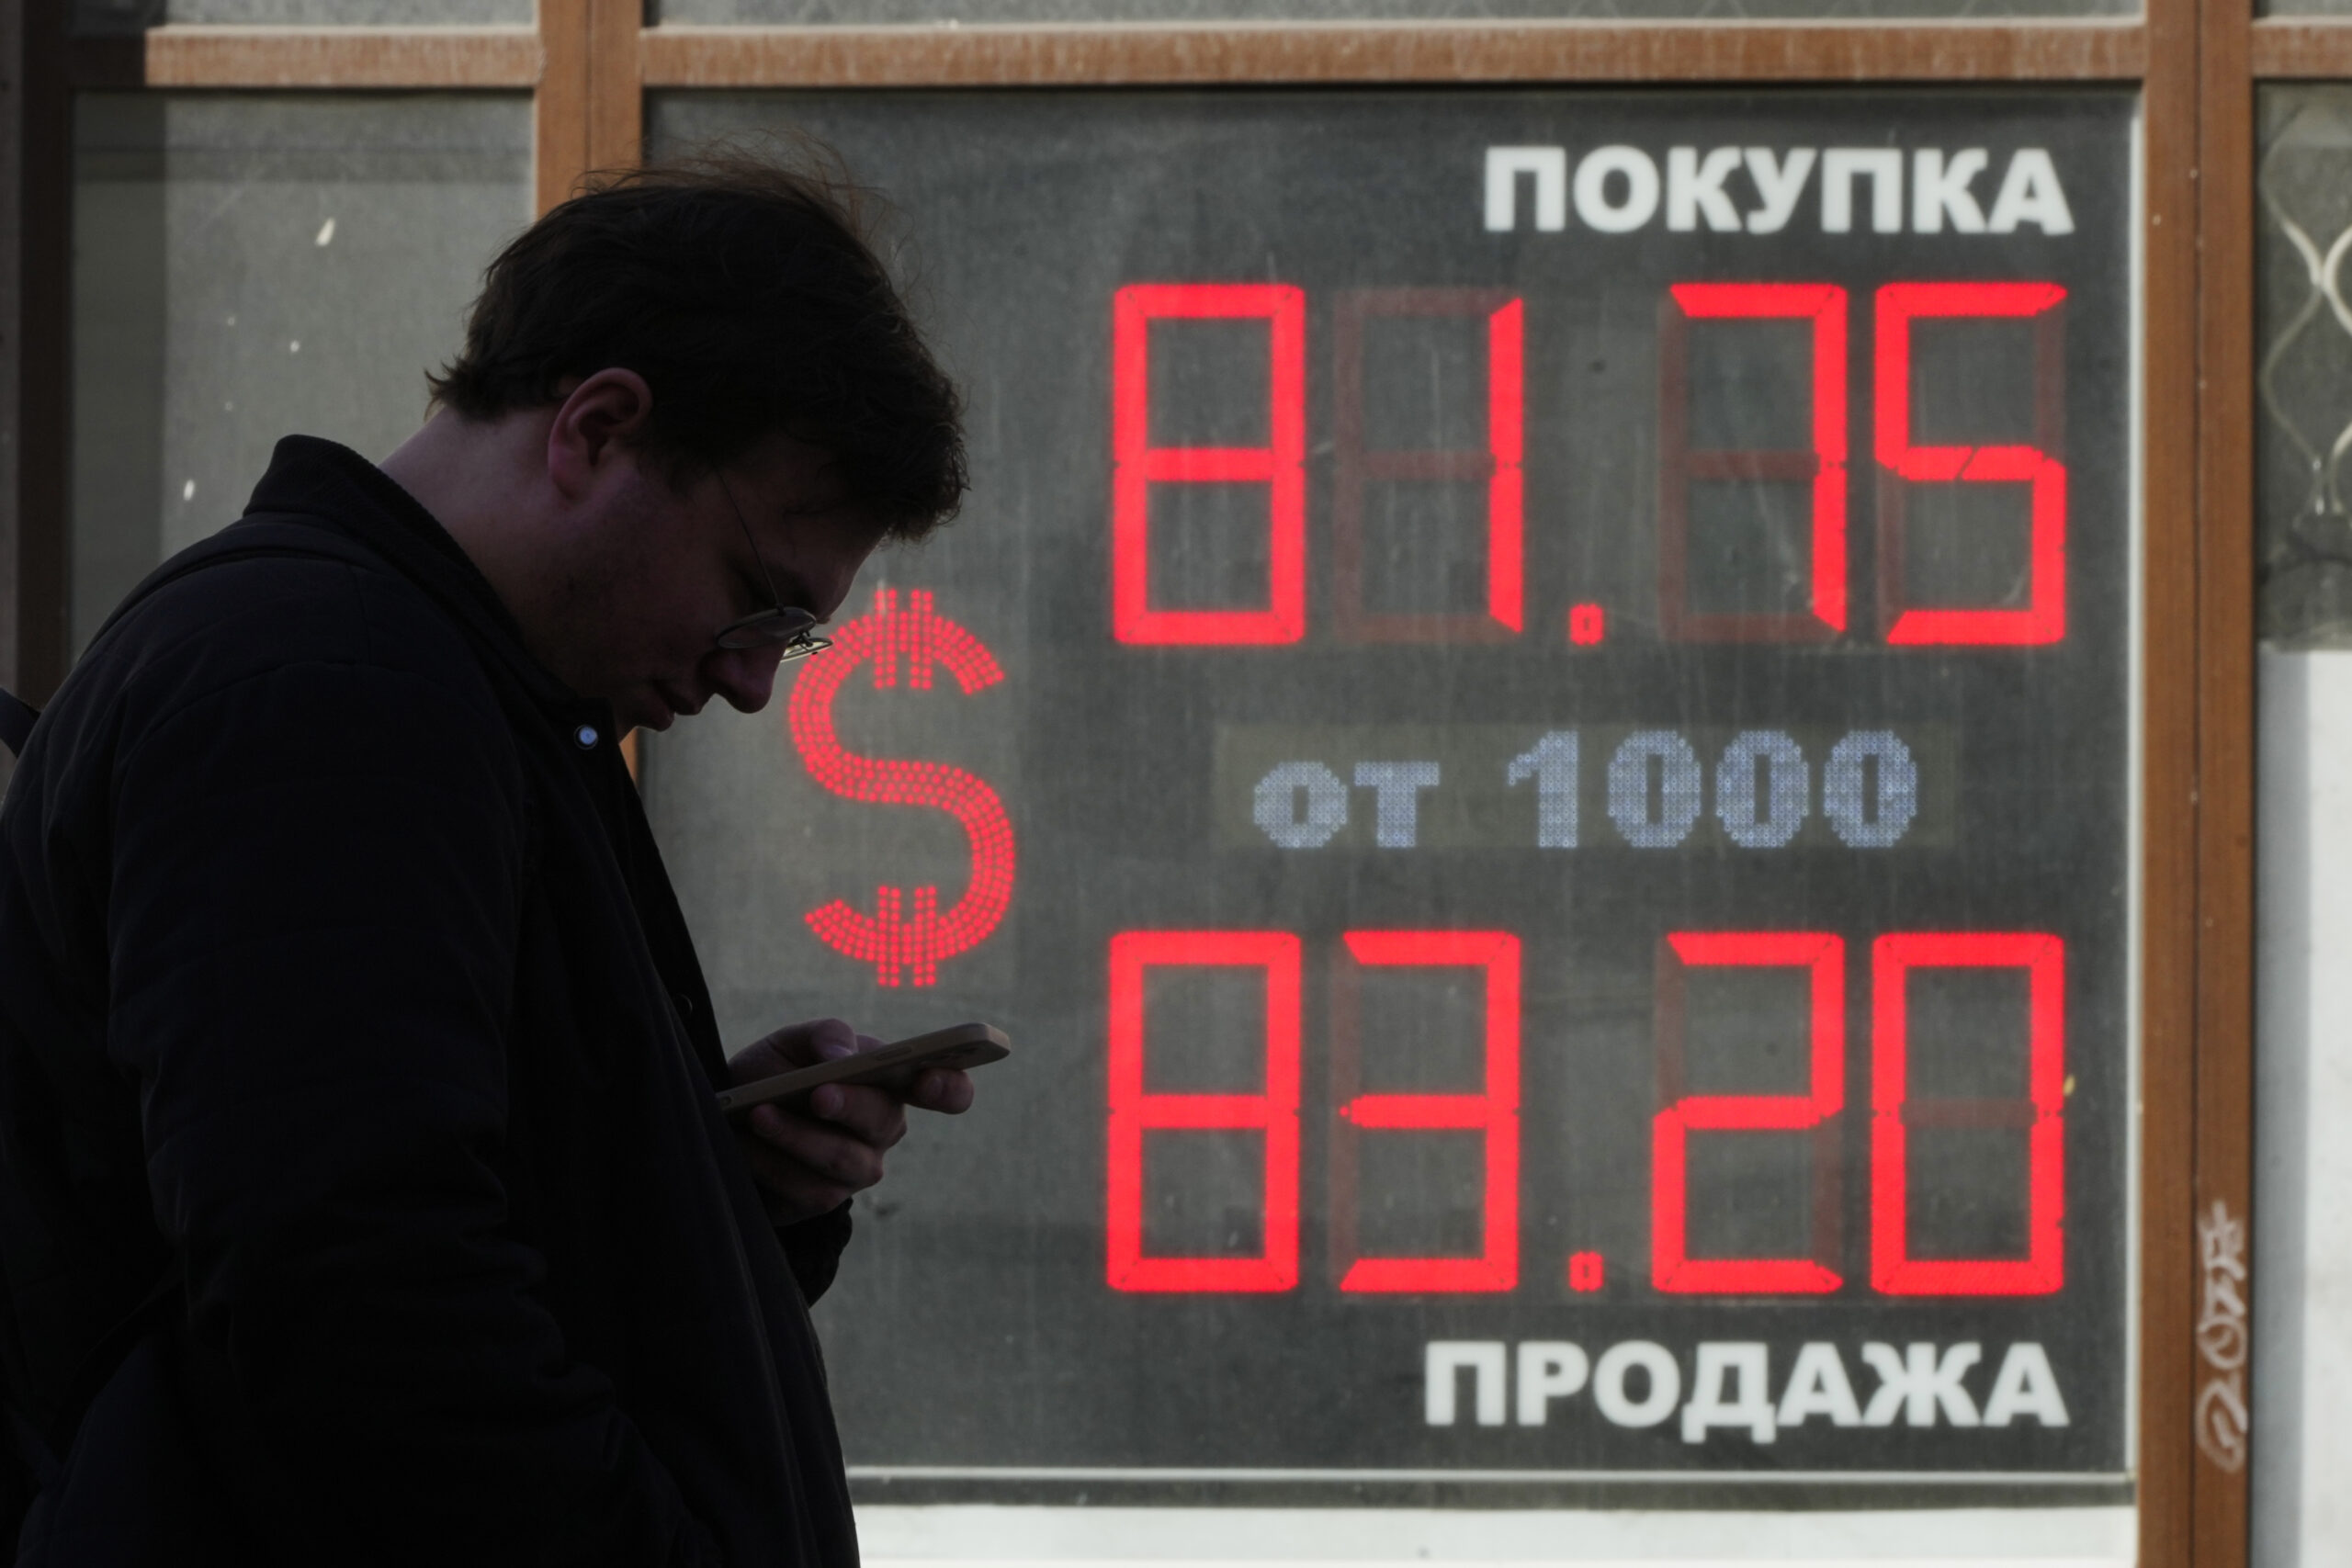 Ρωσία: Προτείνει εξαγορές περιουσιακών στοιχείων ξένων εταιρειών με ομόλογα αντί για μετρητά – Πτώση για το ρούβλι